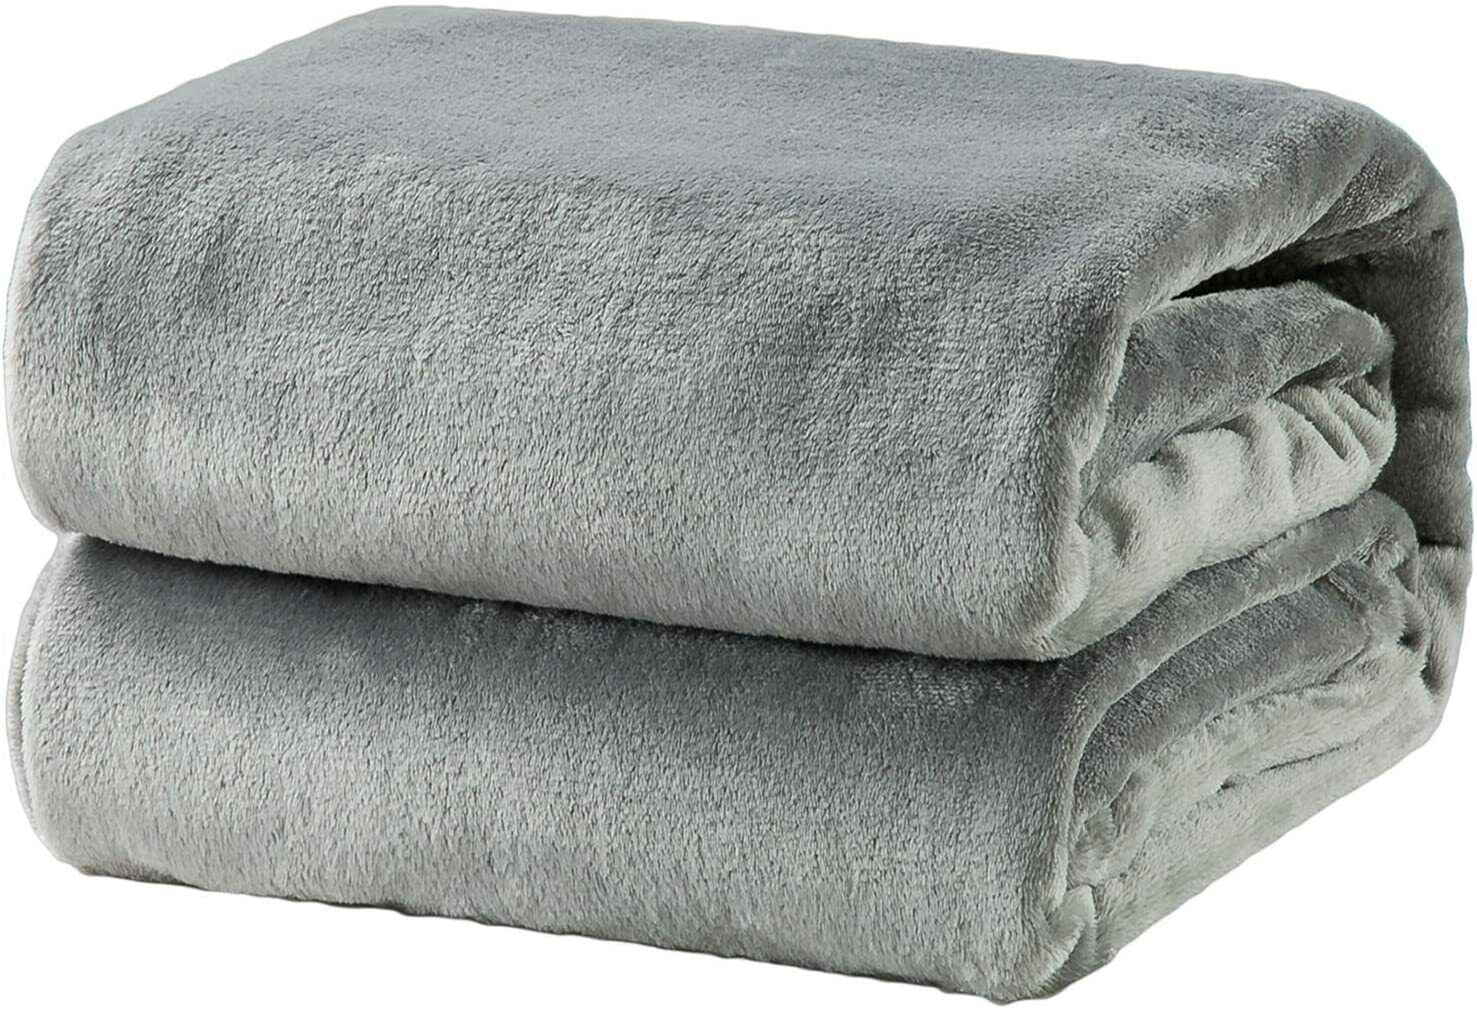 Fleece Blanket Throw Size Grey Lightweight Super Soft Cozy Luxury Bed  Bedsure | eBay